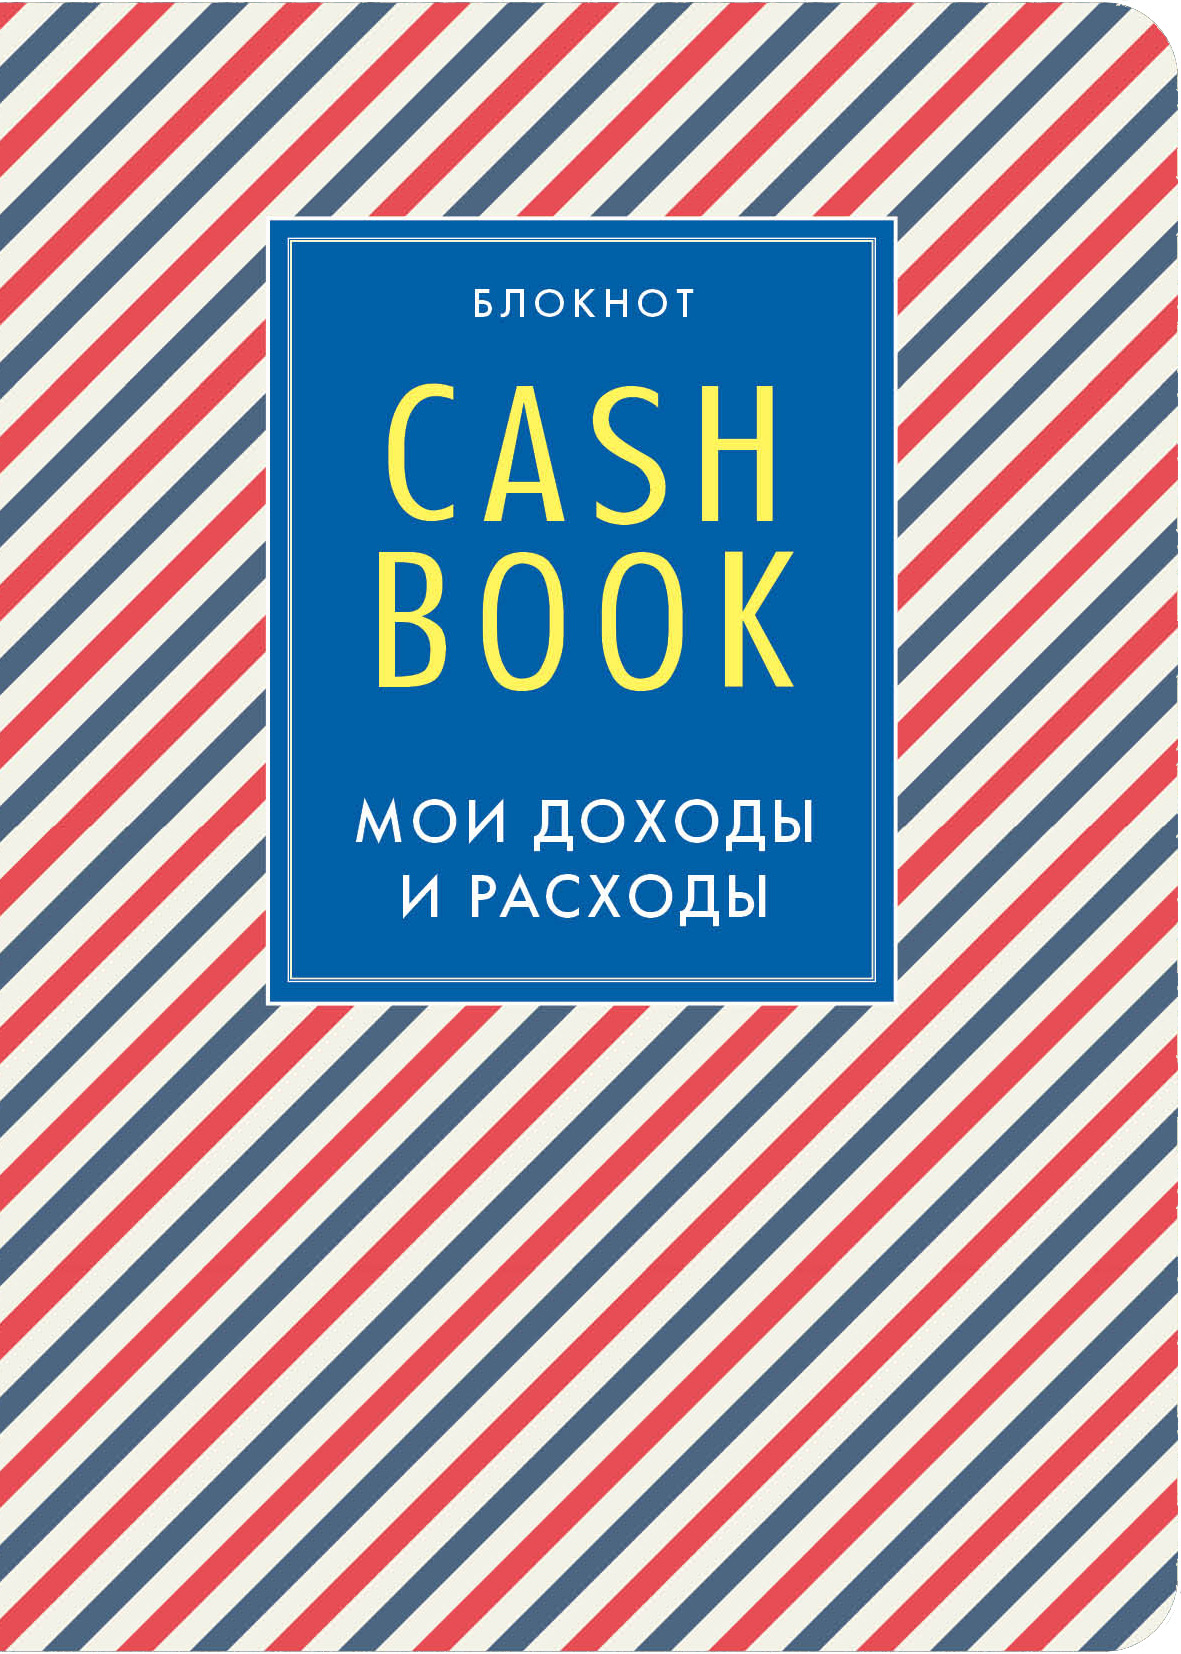 Блокнот CashBook Мои доходы и расходы (4-е издание 3-е оформление)